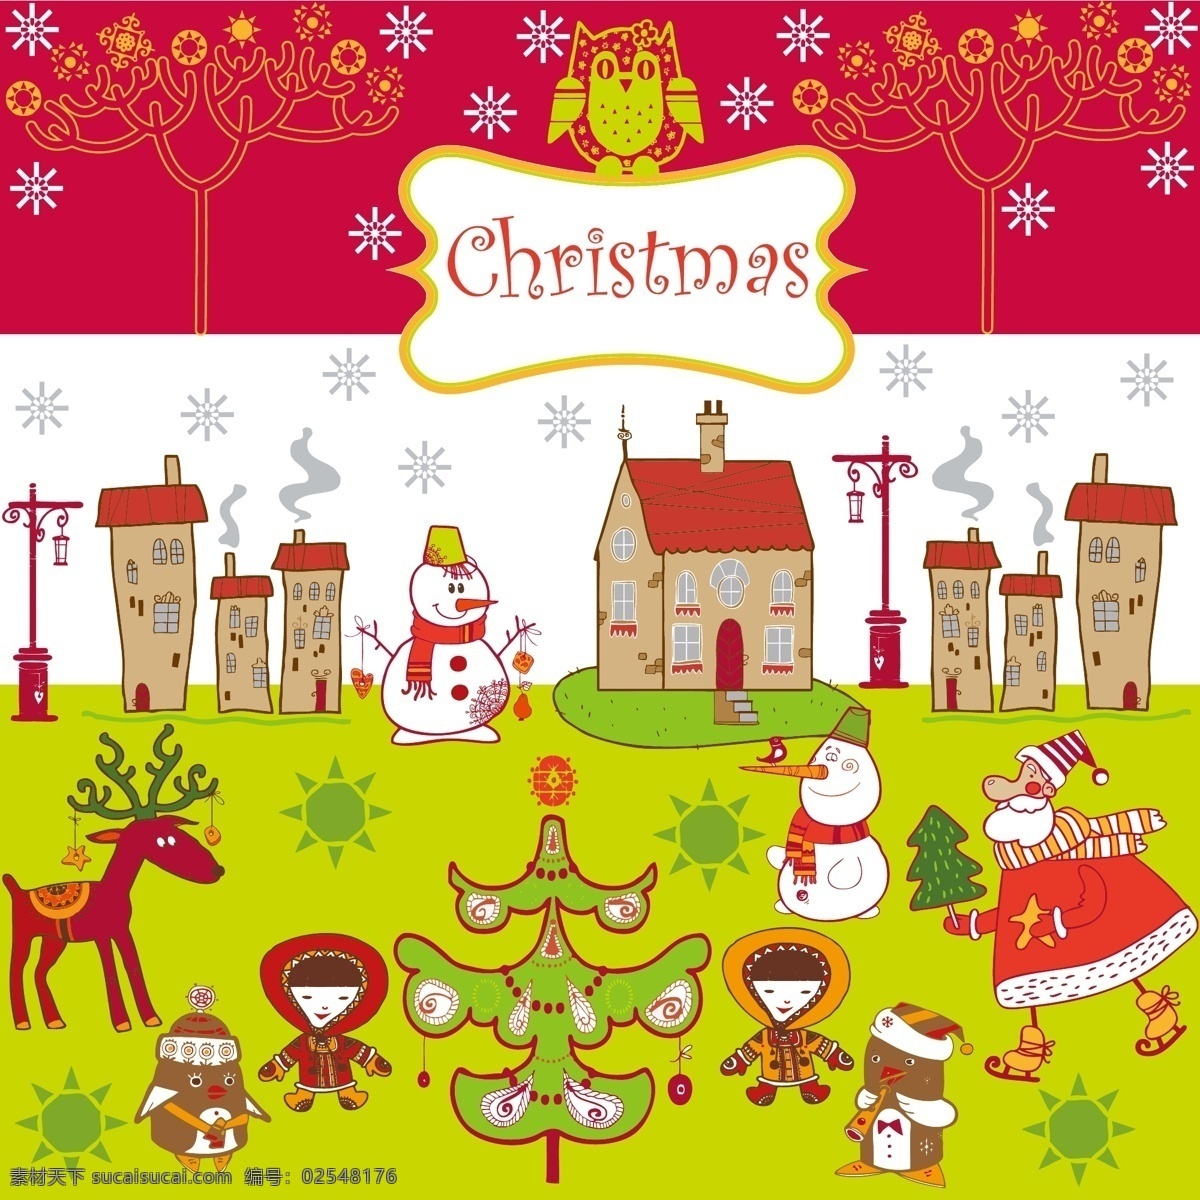 小 动物 圣诞节 小动物 过圣诞节 雪人 麋鹿 圣诞树 圣诞节素材 底纹边框 背景底纹